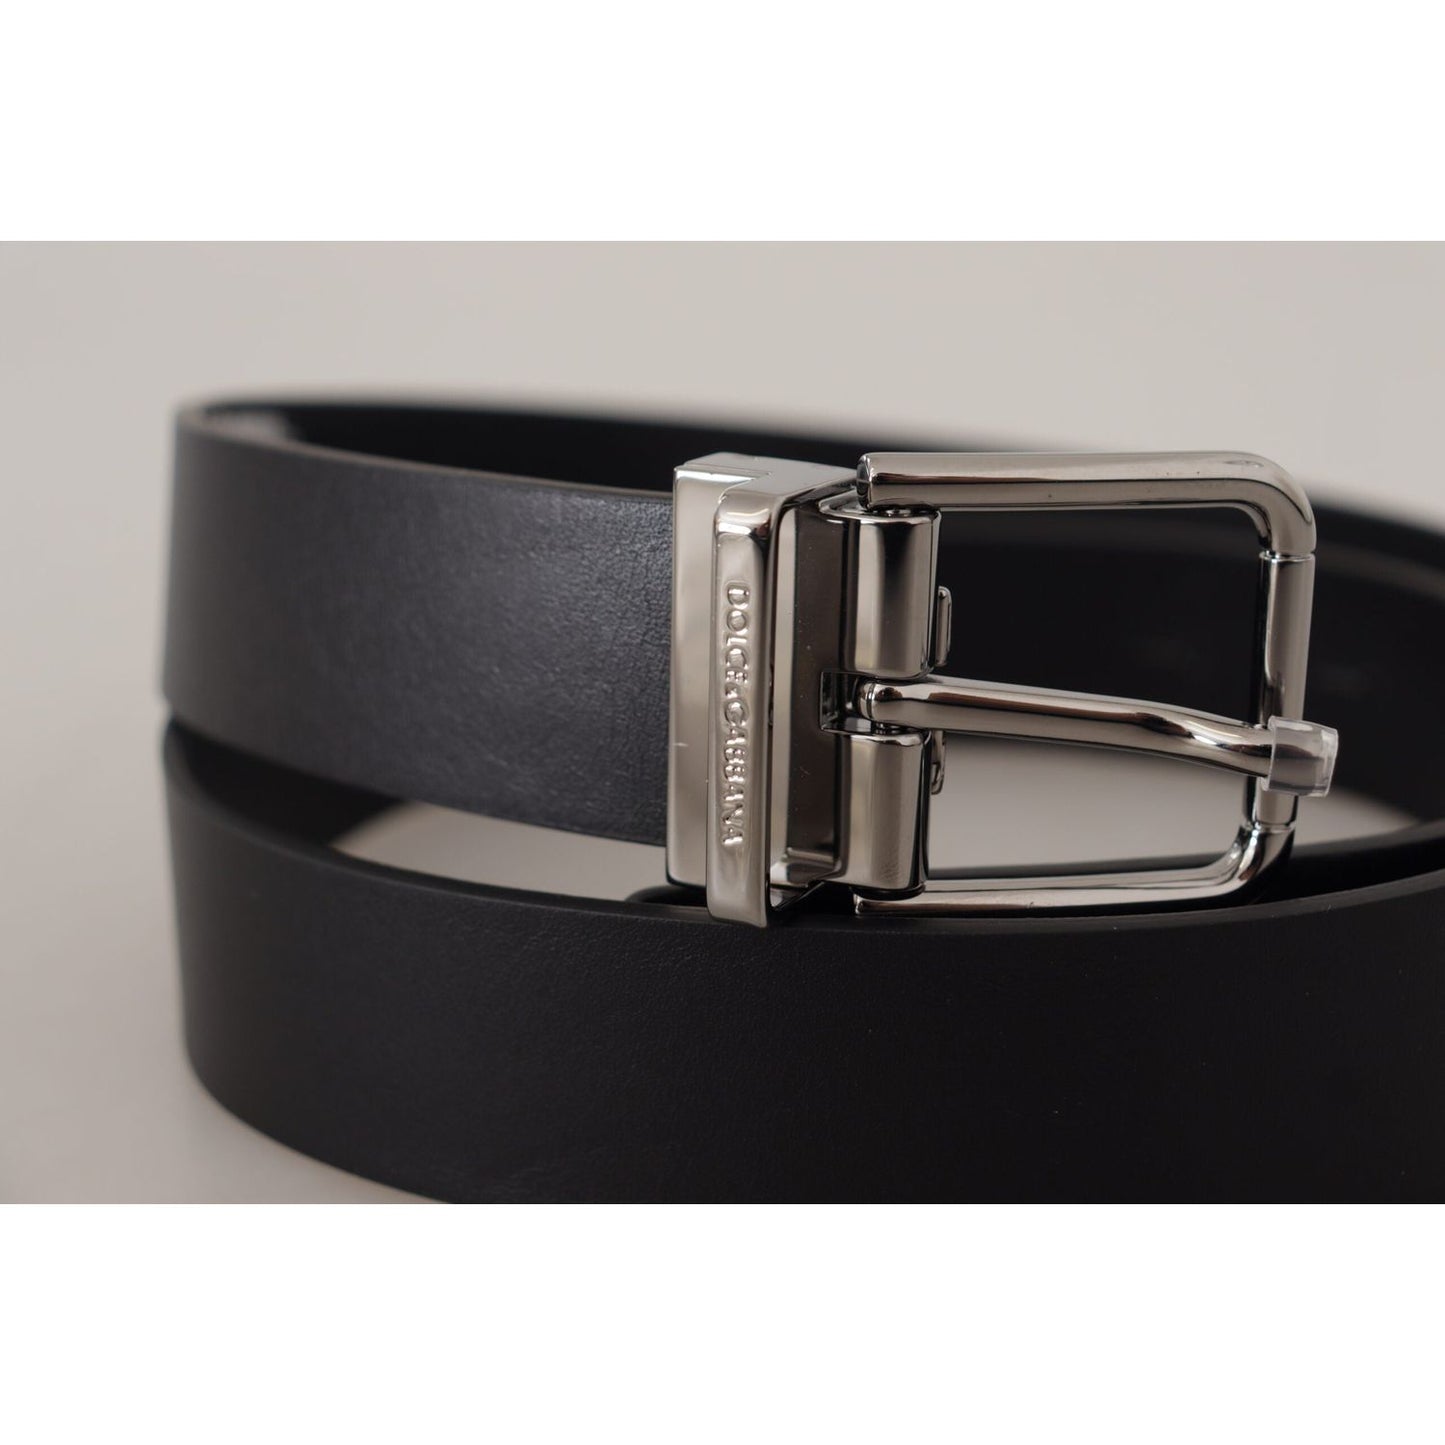 Dolce & Gabbana Elegant Black Leather Belt with Metal Buckle black-calf-leather-logo-engraved-metal-buckle-belt-4